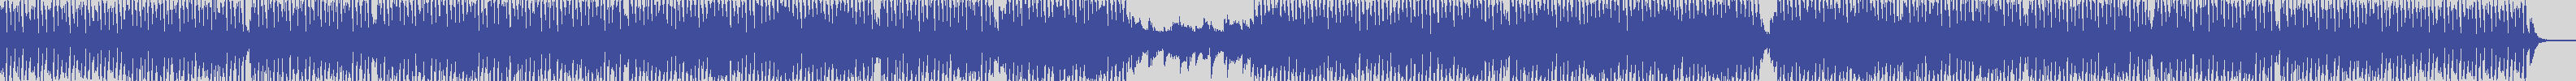 coverland_records [smile1146] Joe Piccino, Alessandro Leuzzi - La Ricciolina [Extended Mix] audio wave form